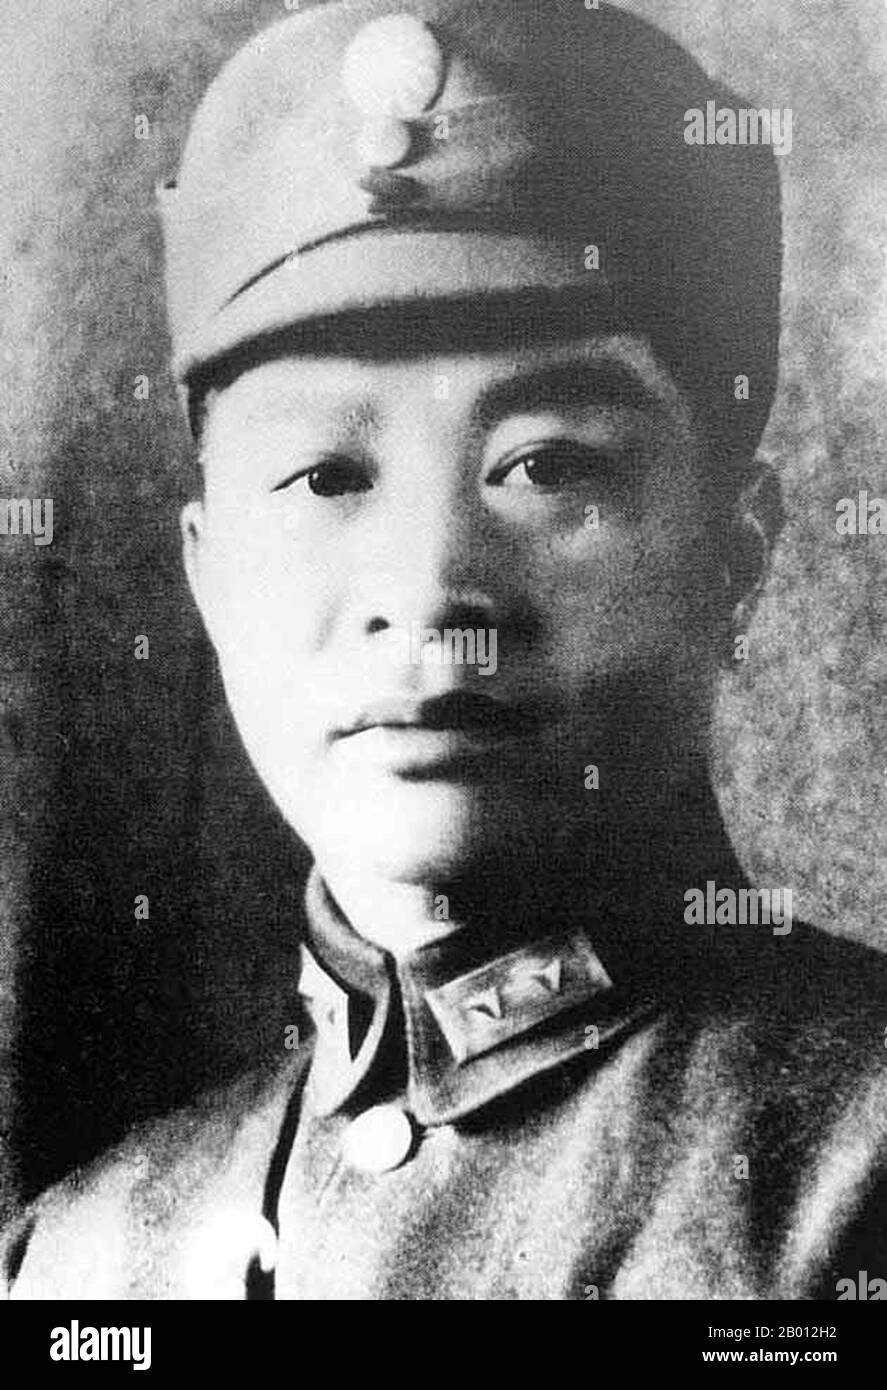 China: Ye Ting (1896-1946), geboren in Guangdong, war ein chinesischer kommunistischer Militärführer. Ye Ting trat der Kuomintang bei, als Sun Yat-sen sie 1919 gründete (die Kuomintang existierte vor 1919, wurde aber als chinesische revolutionäre Partei bezeichnet) und war ab 1921 Bataillonskommandeur in der Nationalen Revolutionsarmee. 1924 studierte er in der Sowjetunion und trat im Dezember dieses Jahres der Kommunistischen Partei Chinas bei. Im September 1925 kehrte er nach China zurück, um zunächst als Stabsoffizier, dann als unabhängiger Regimentskommandeur in der Neuen Vierten Armee der Nationalen Revolutionären Armee zu dienen. Stockfoto